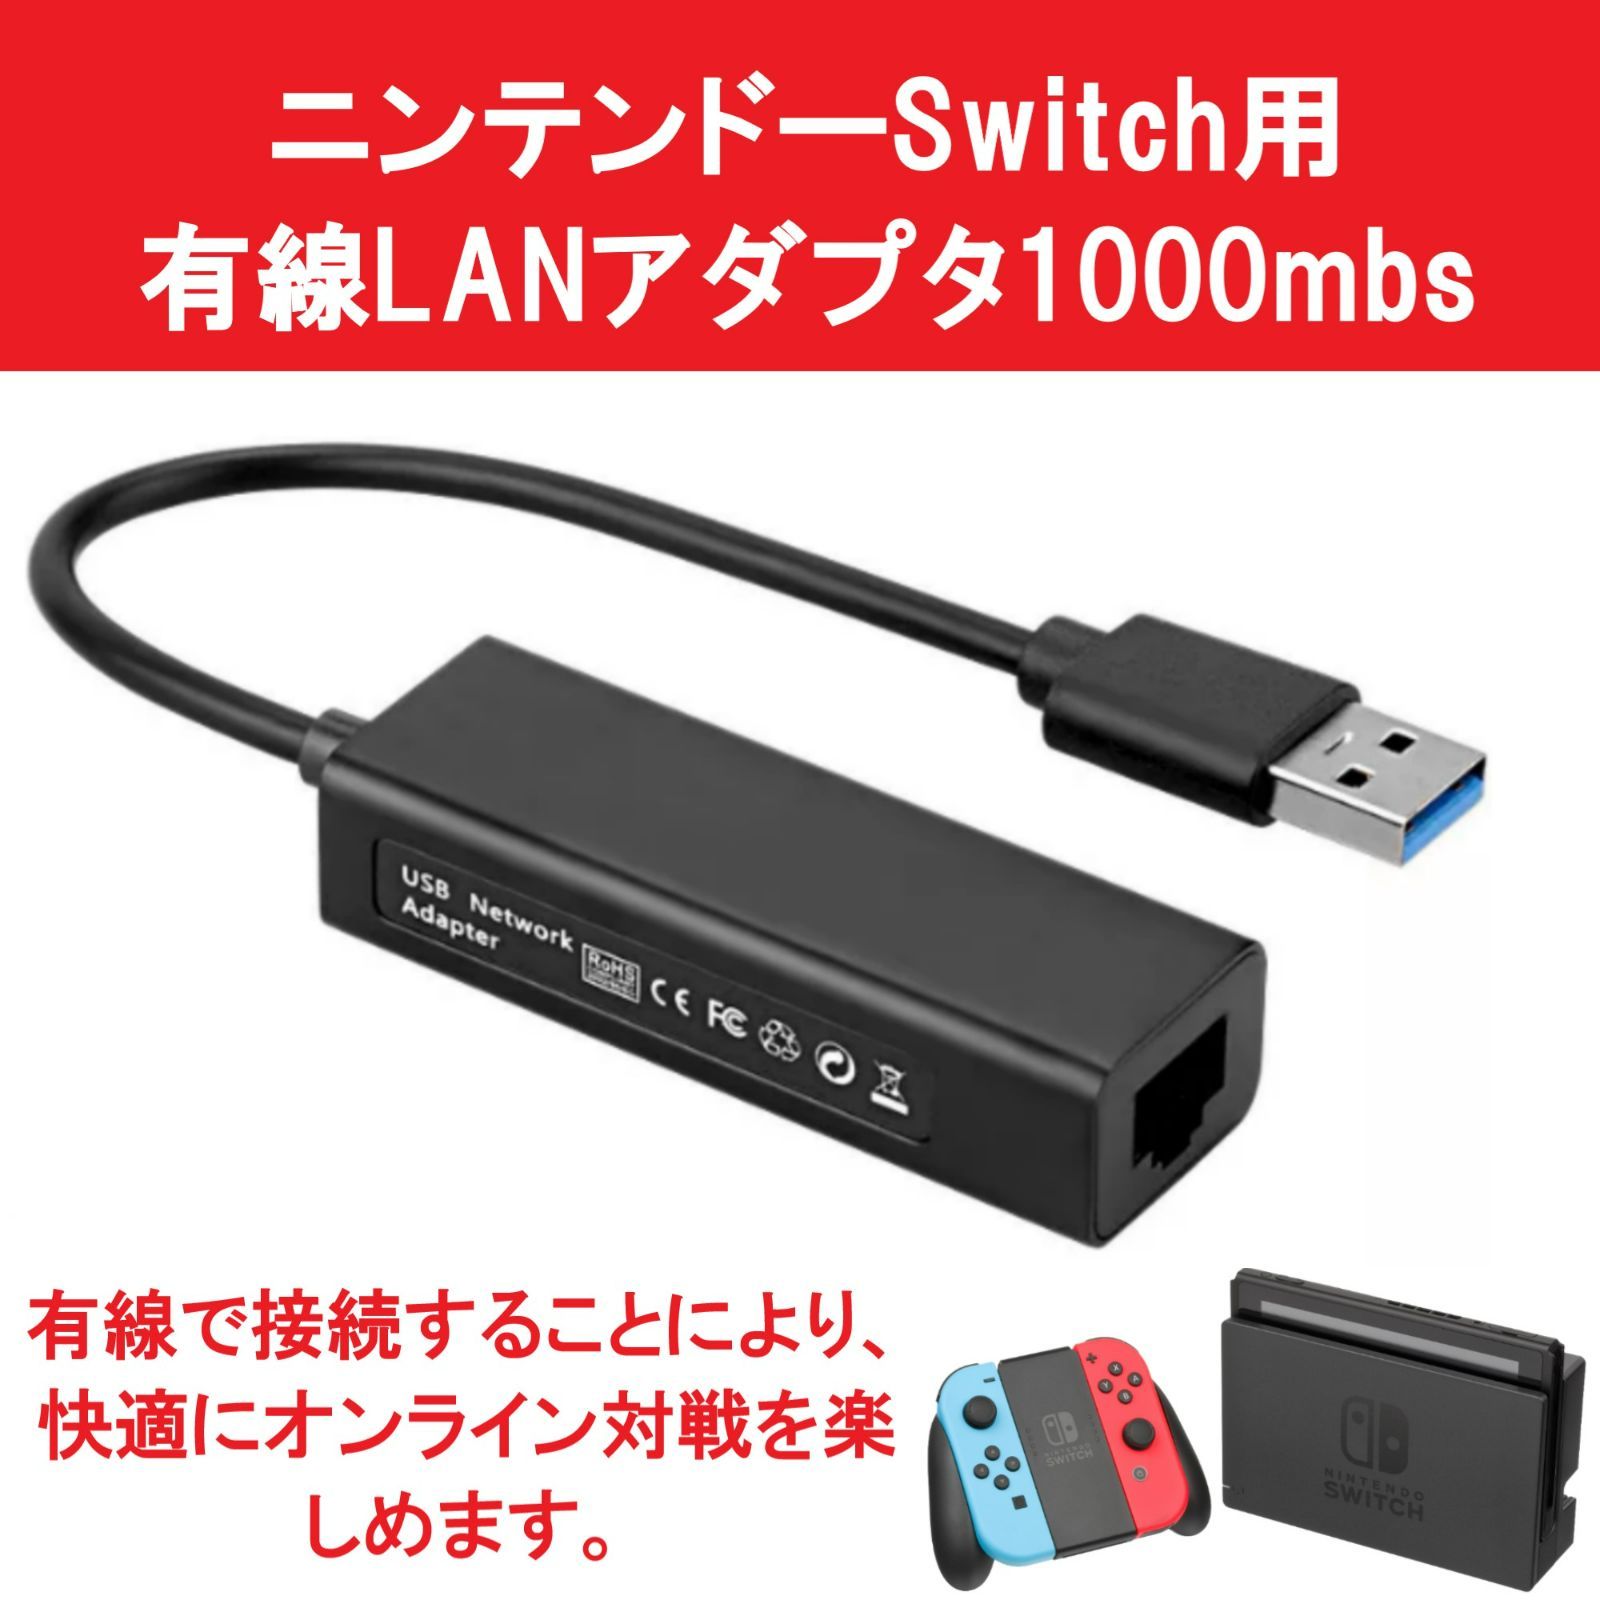 Nintendo Switch本体 スマブラ LANアダプタ 3点家庭用ゲーム機本体